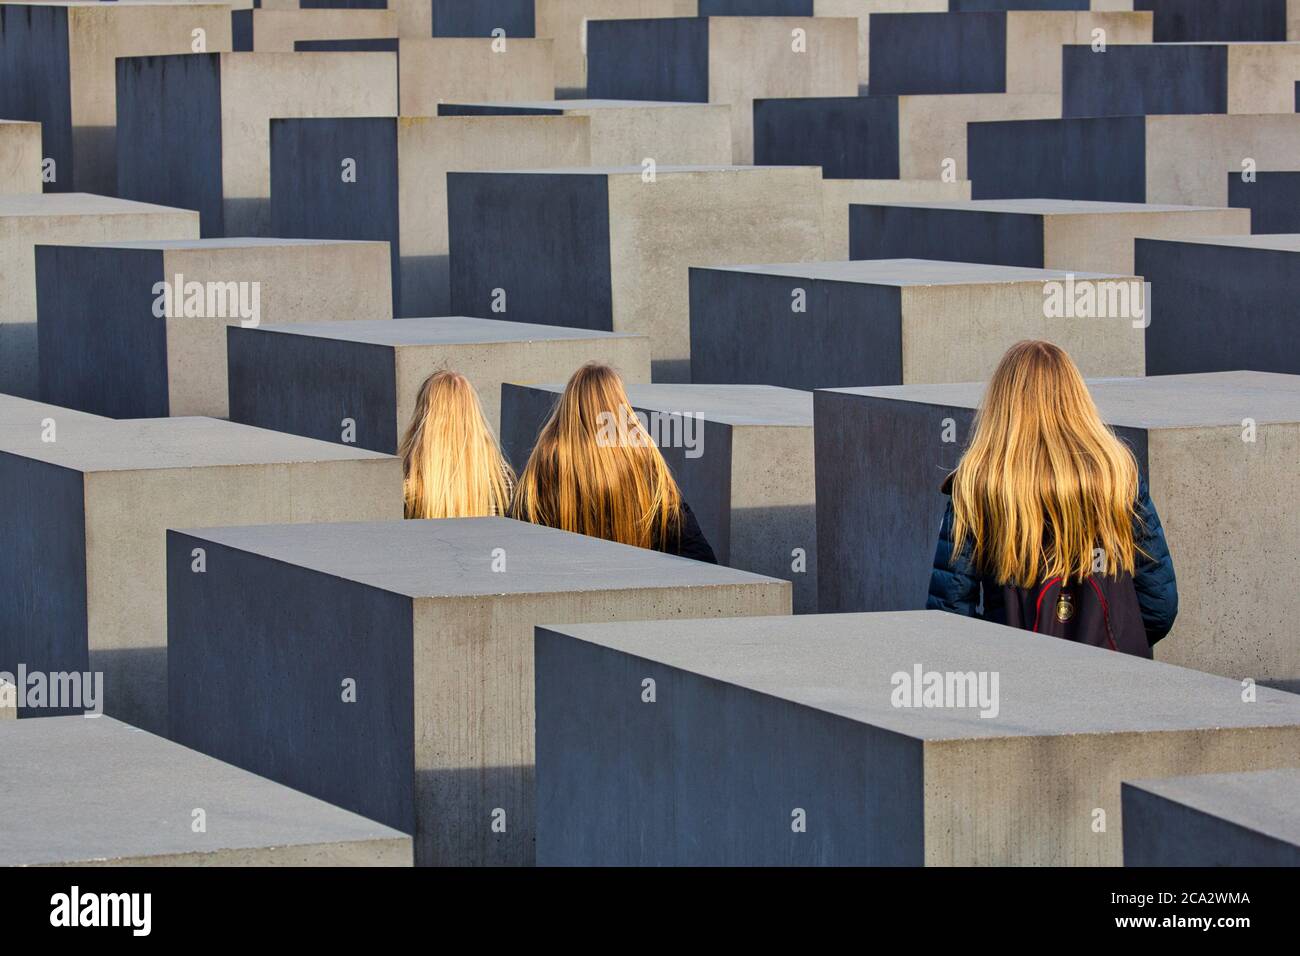 Holocaust-Mahnmal commémoratif de l'holocauste. Conçu par l'architecte Peter Eisenman et ingénieur Buro Happold, Berlin, Allemagne. Banque D'Images